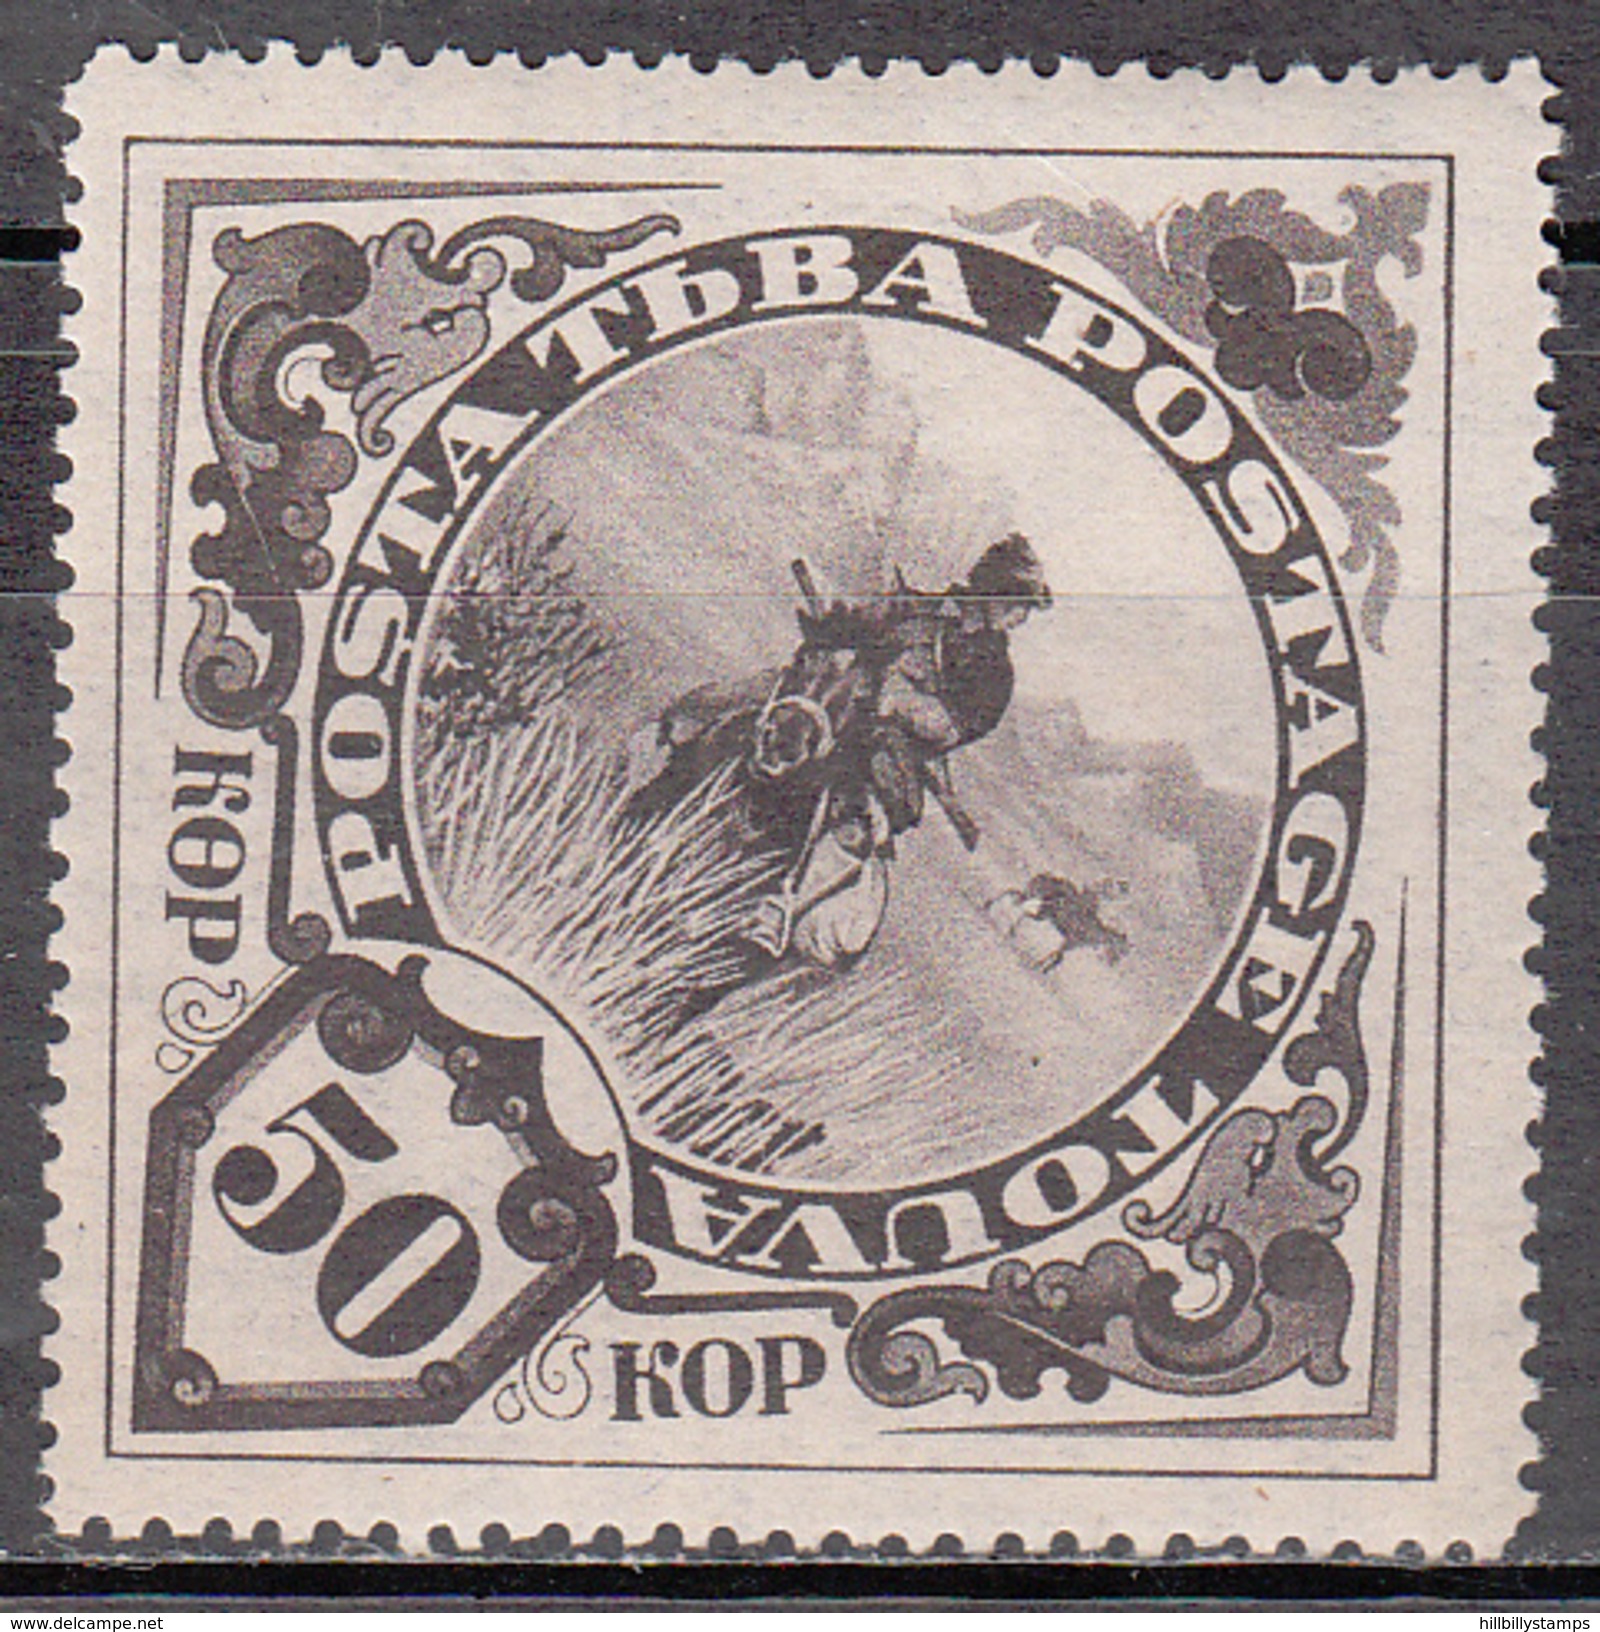 TANNU TUVA     SCOTT NO. 60   MINTHINGED    YEAR  1935 - Touva